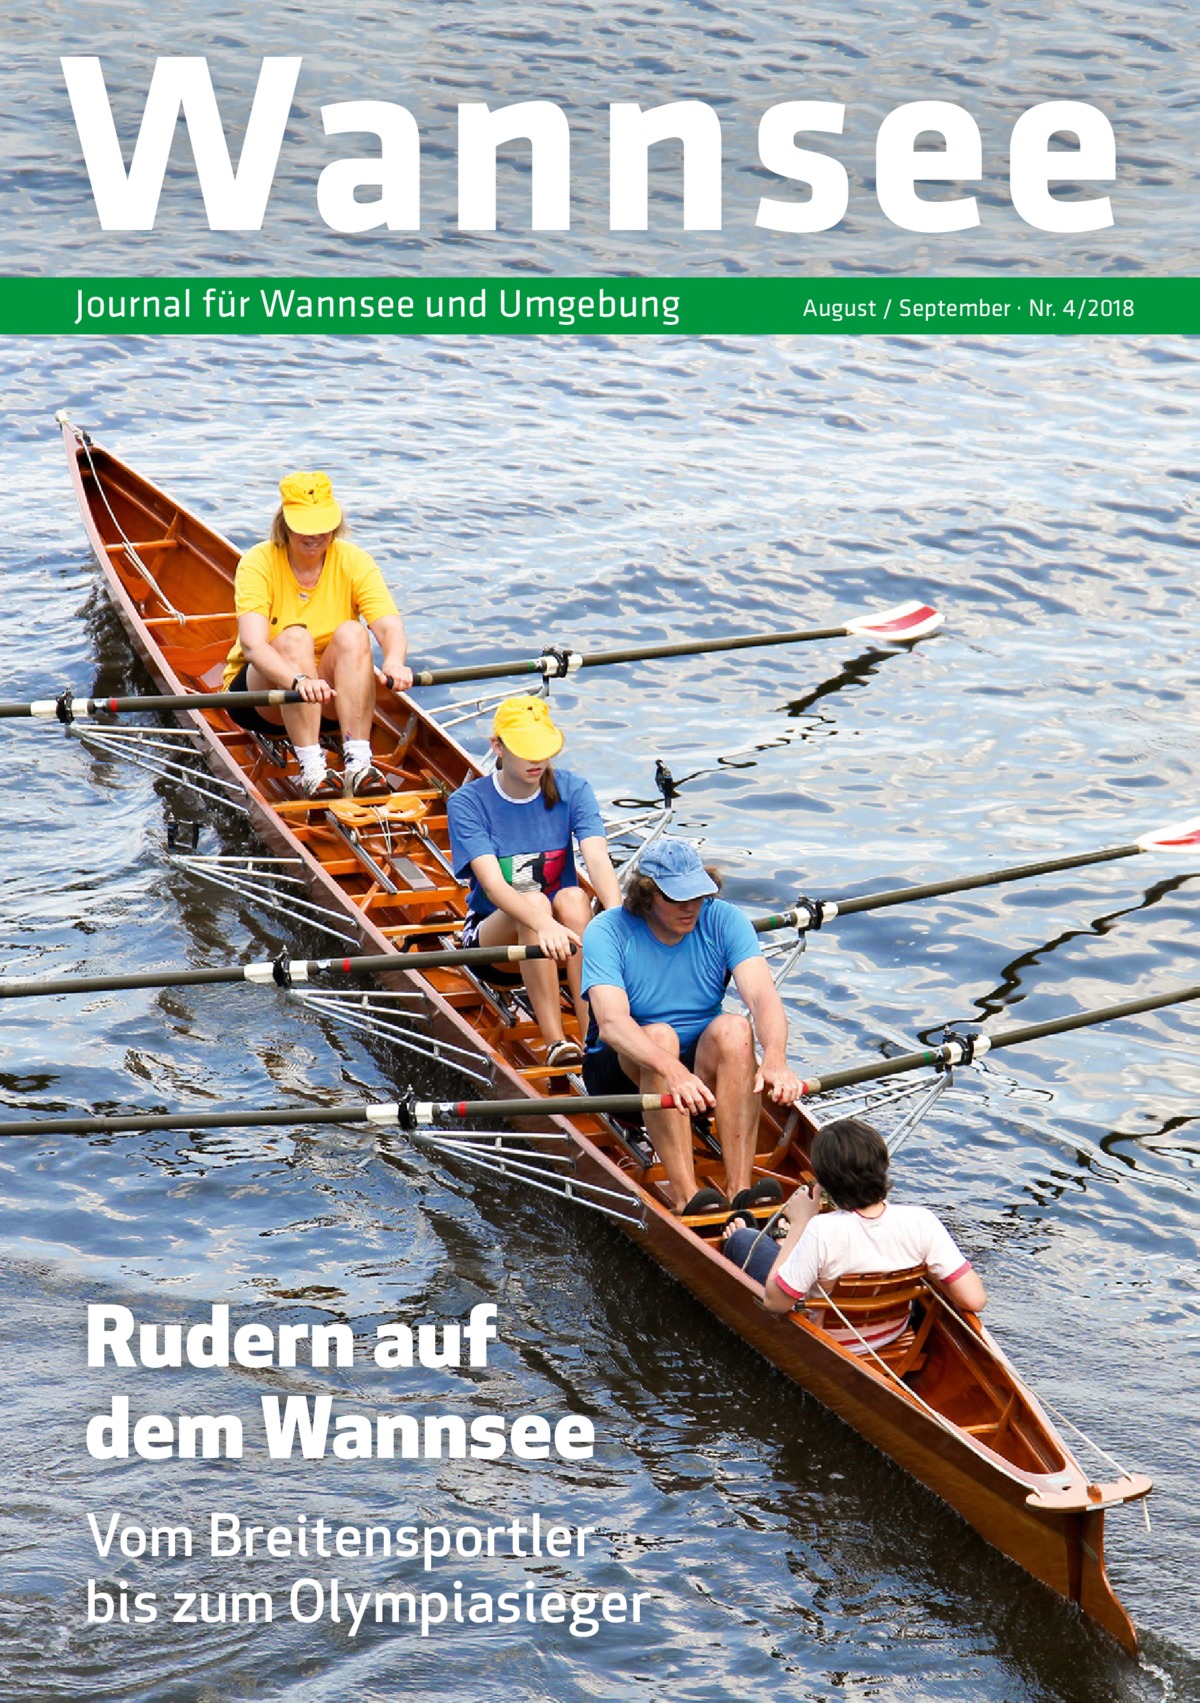 Wannsee Journal für Wannsee und Umgebung  Rudern auf dem Wannsee Vom Breitensportler bis zum Olympiasieger  August / September · Nr. 4/2018